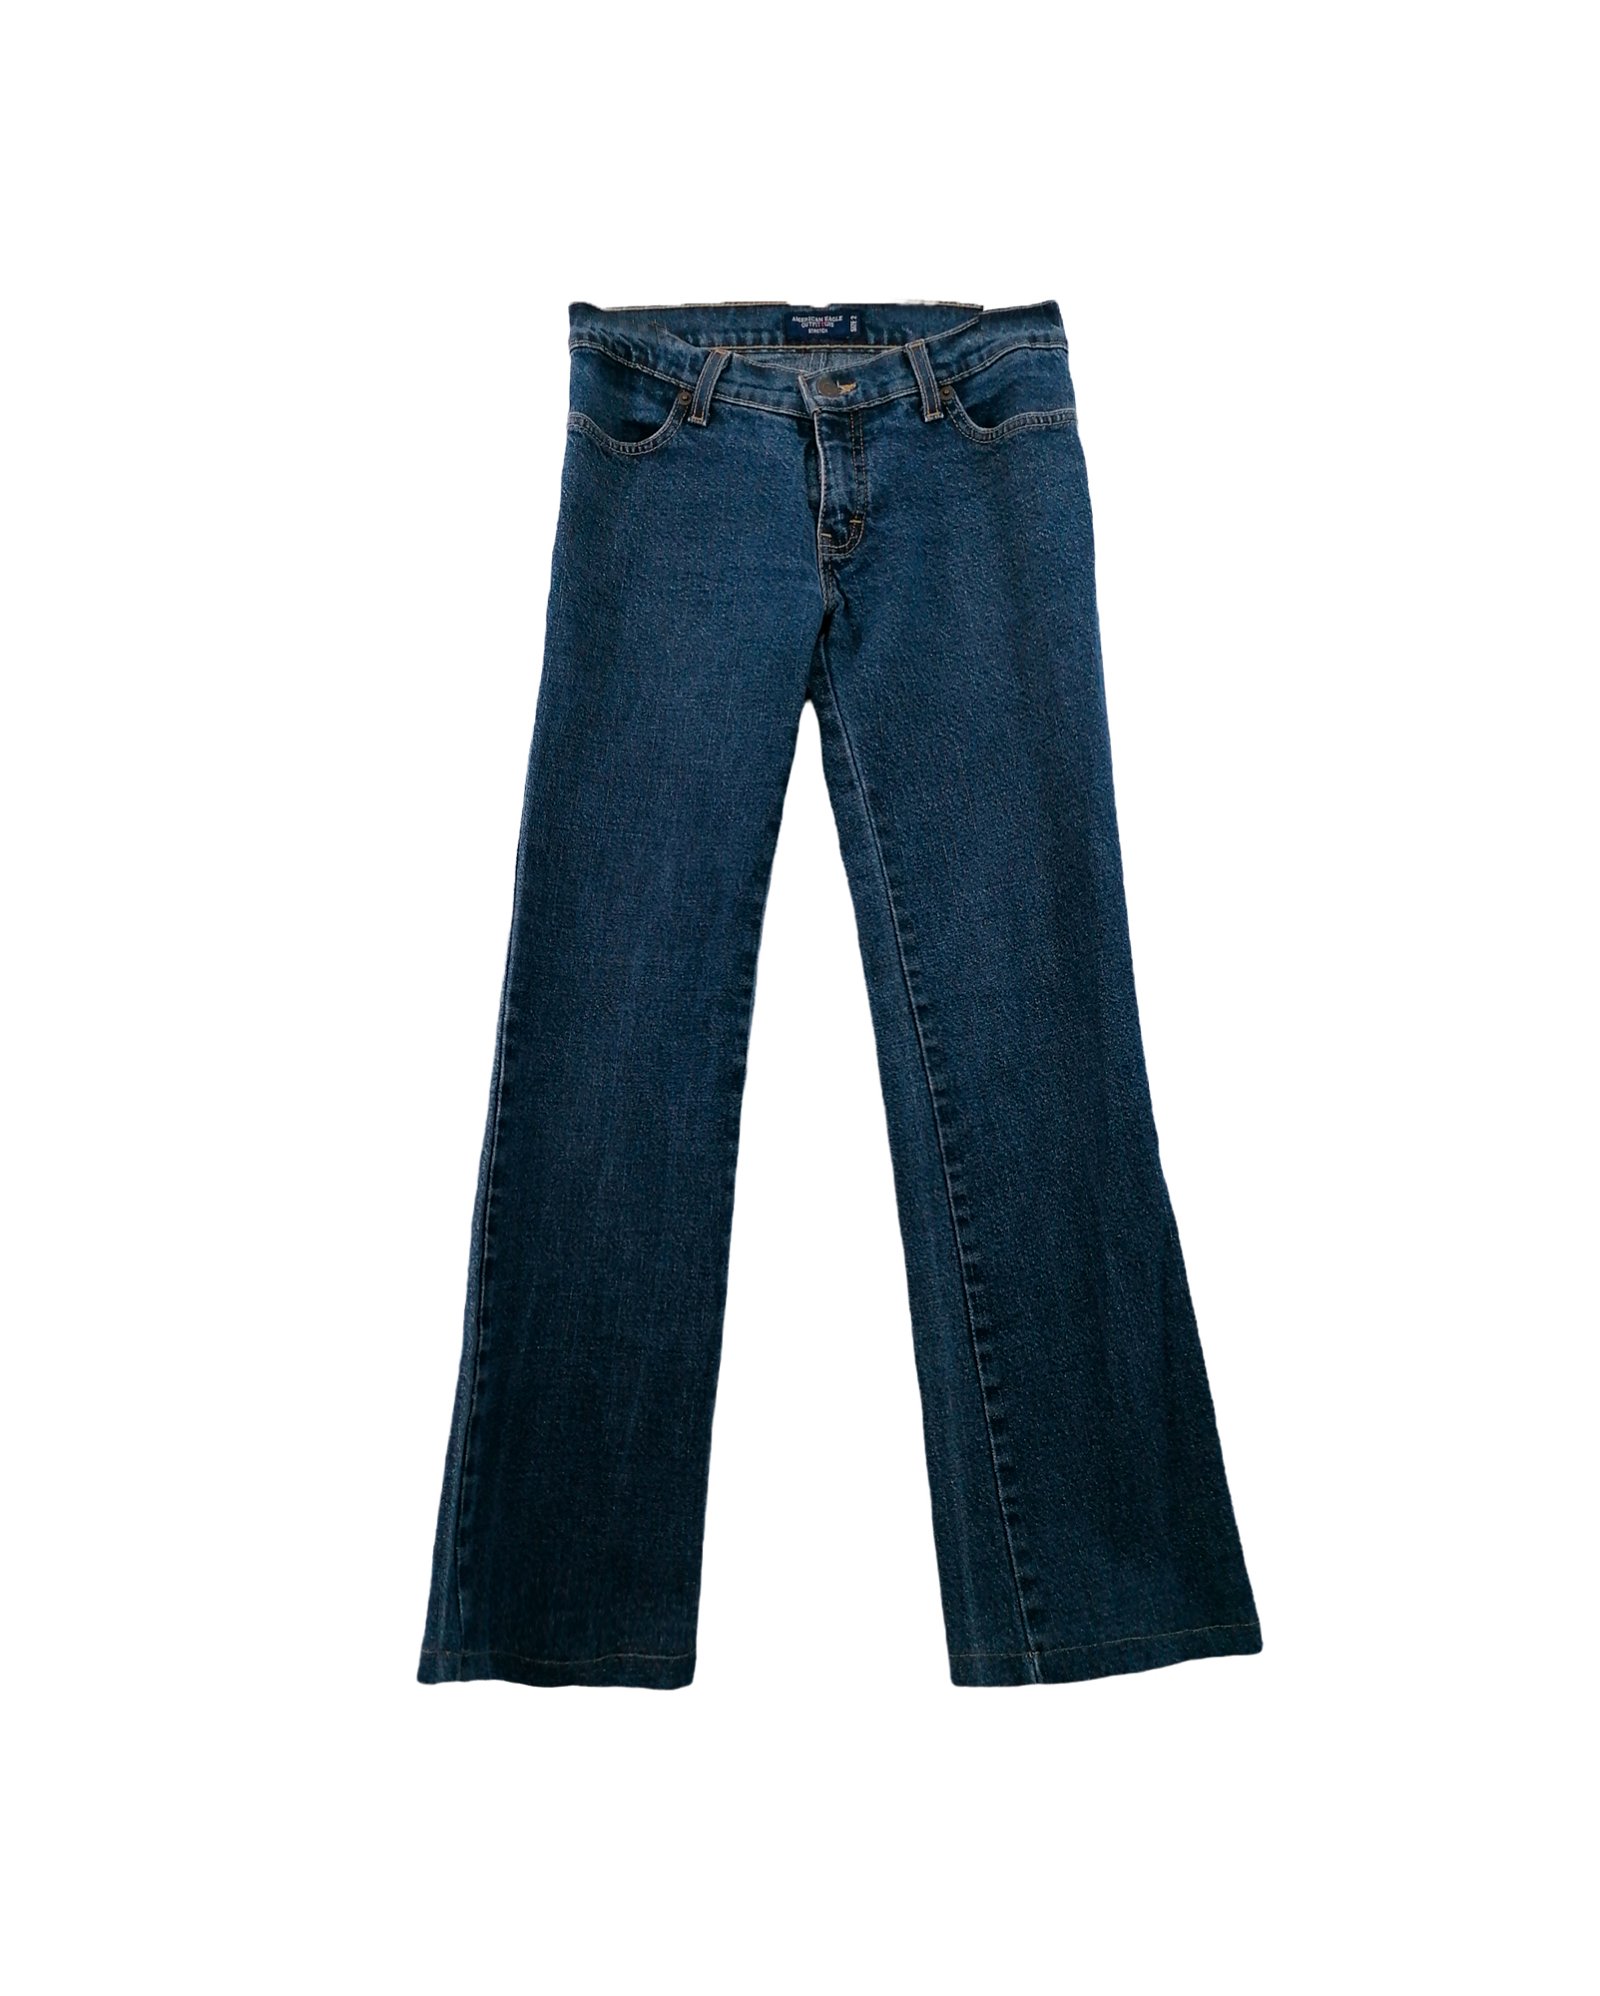 Jeans Acampanados 1